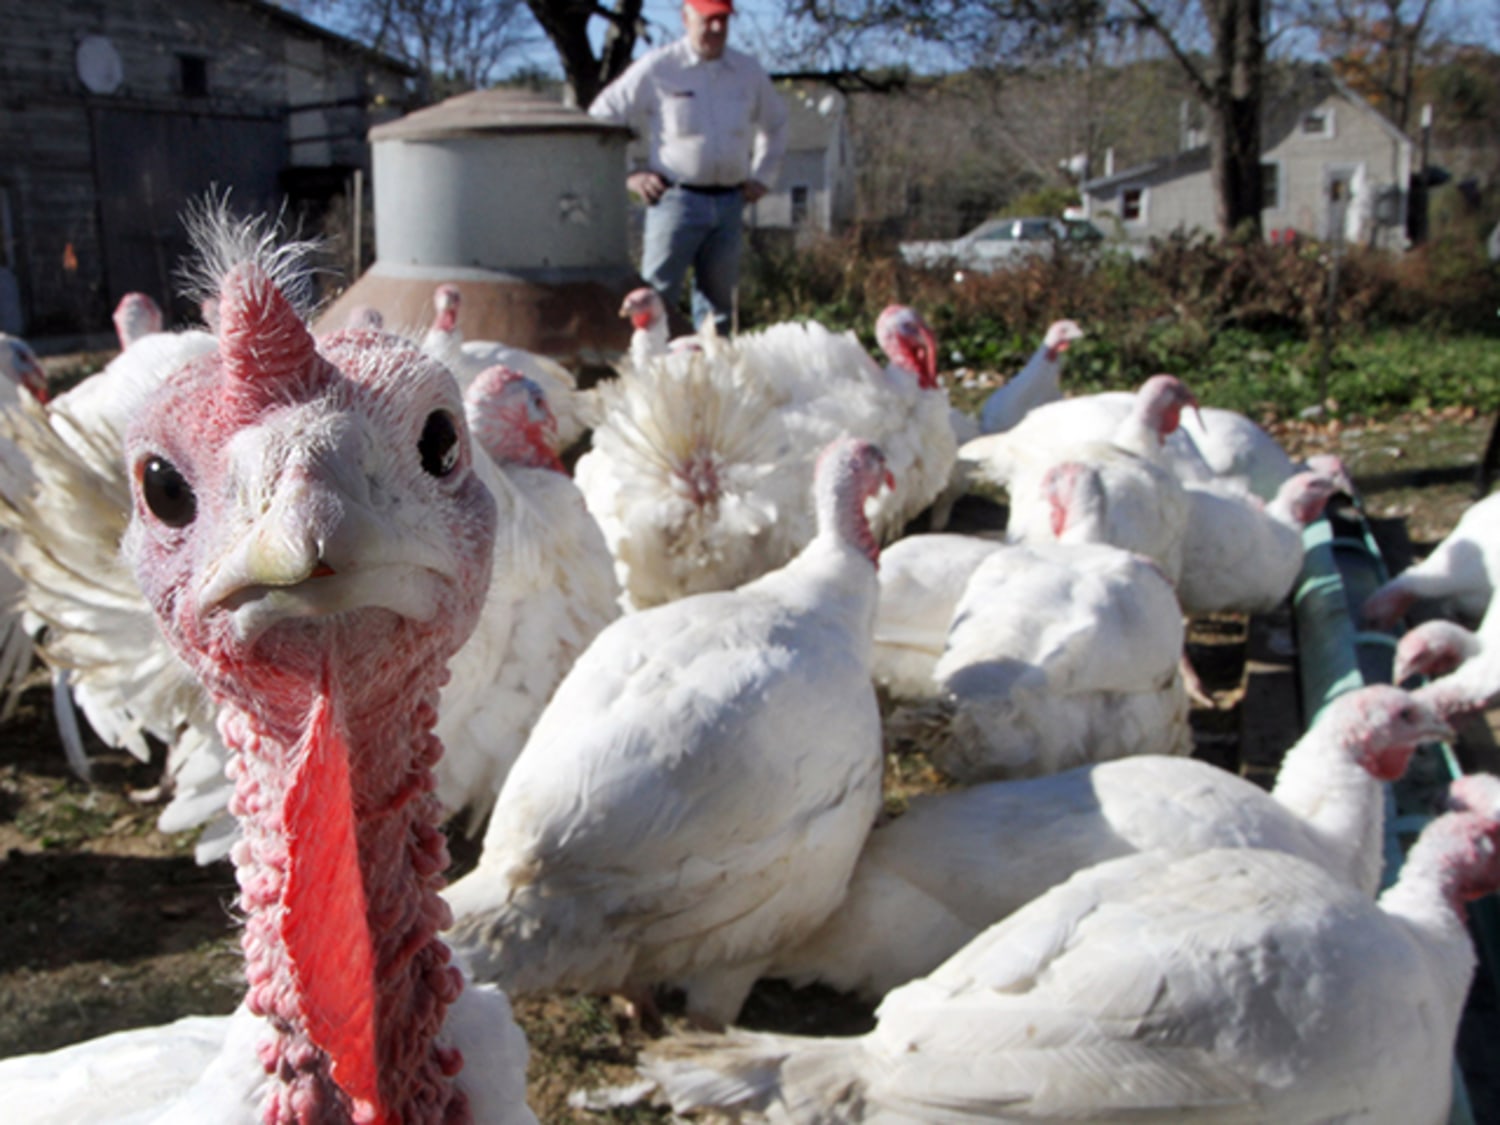 Gobble, gobble: Thanksgiving turkeys chug beer